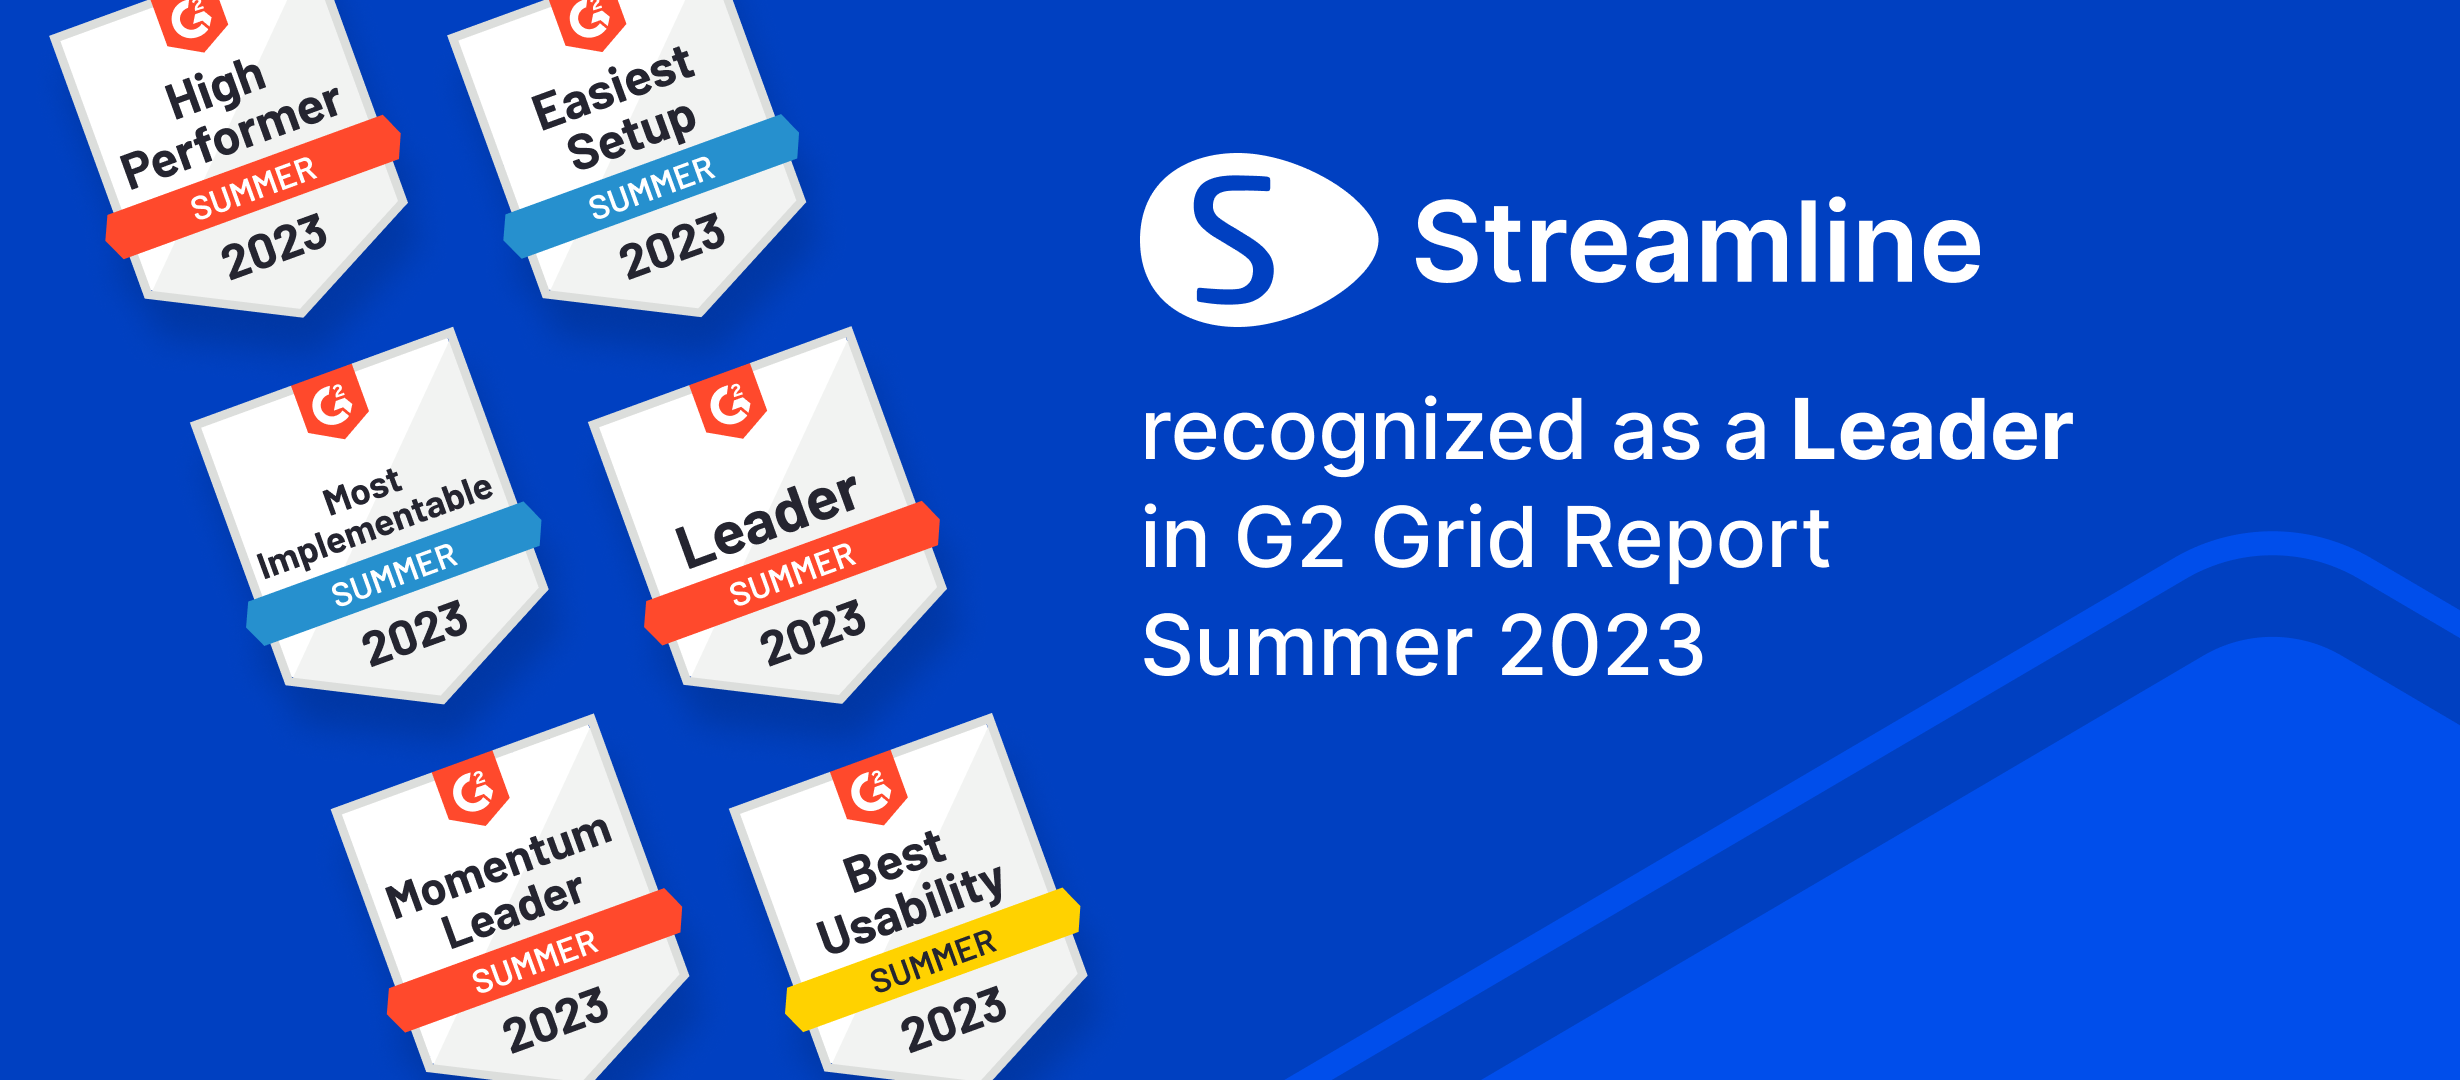 Az GMDH Streamline több kategóriában is vezető szerepet kapott az G2 Summer'23 jelentéseiben | GMDH